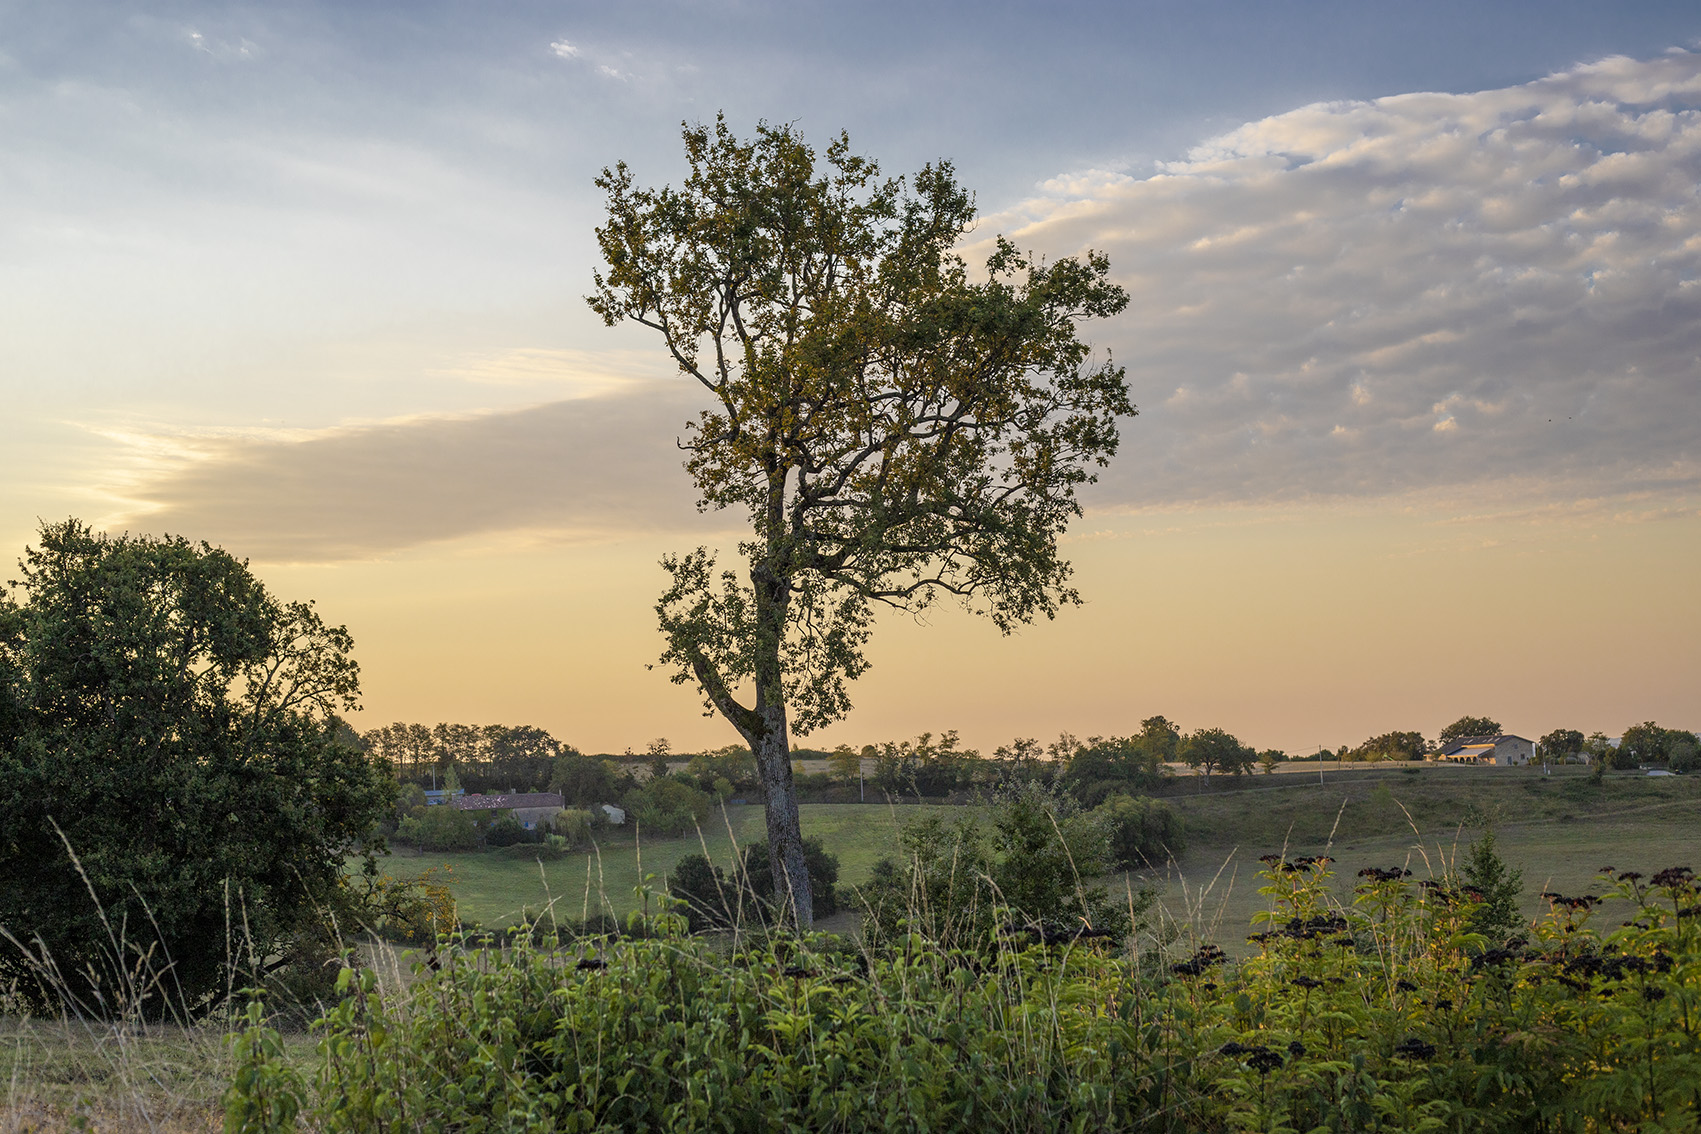 photographe professionnel pas cher sur bordeauxphoto de nature avec un arbre seul entouré de verdure et en second plan un ciel orangé et bleuté sur une photo aux couleurs accentuées